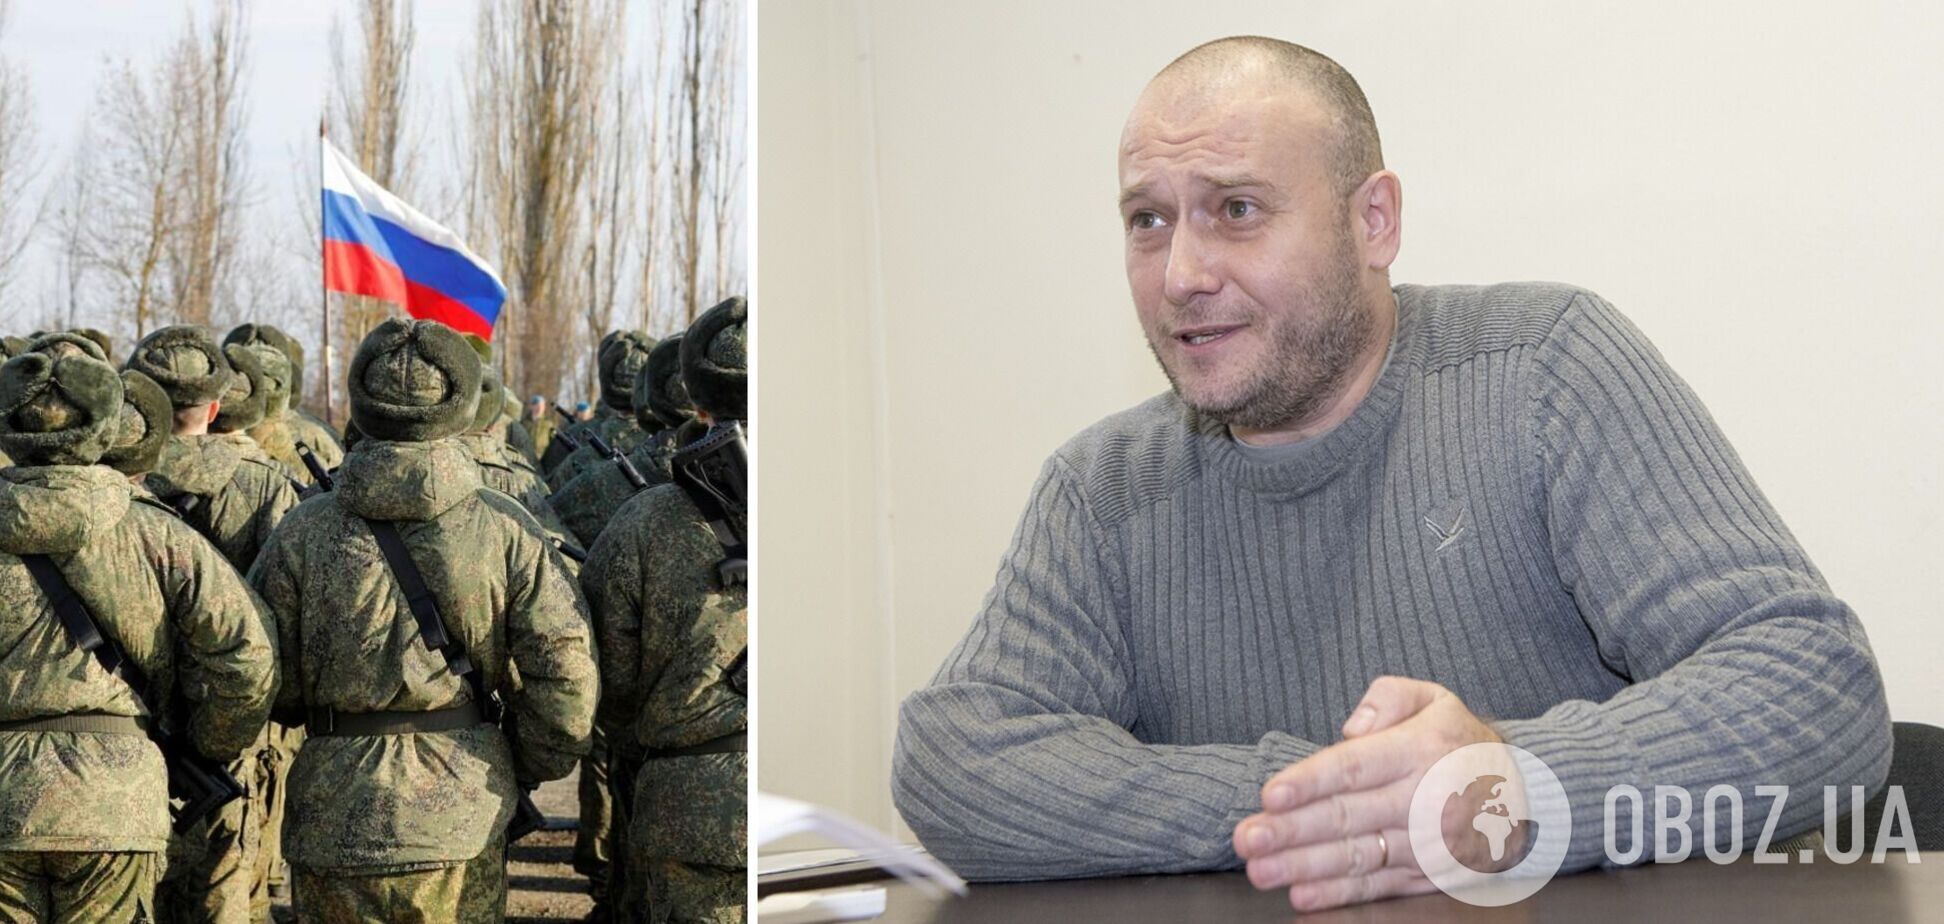 Ярош оценил риск вторжения РФ в Украину и рассказал, какие провокации оккупанты могут устроить на Донбассе